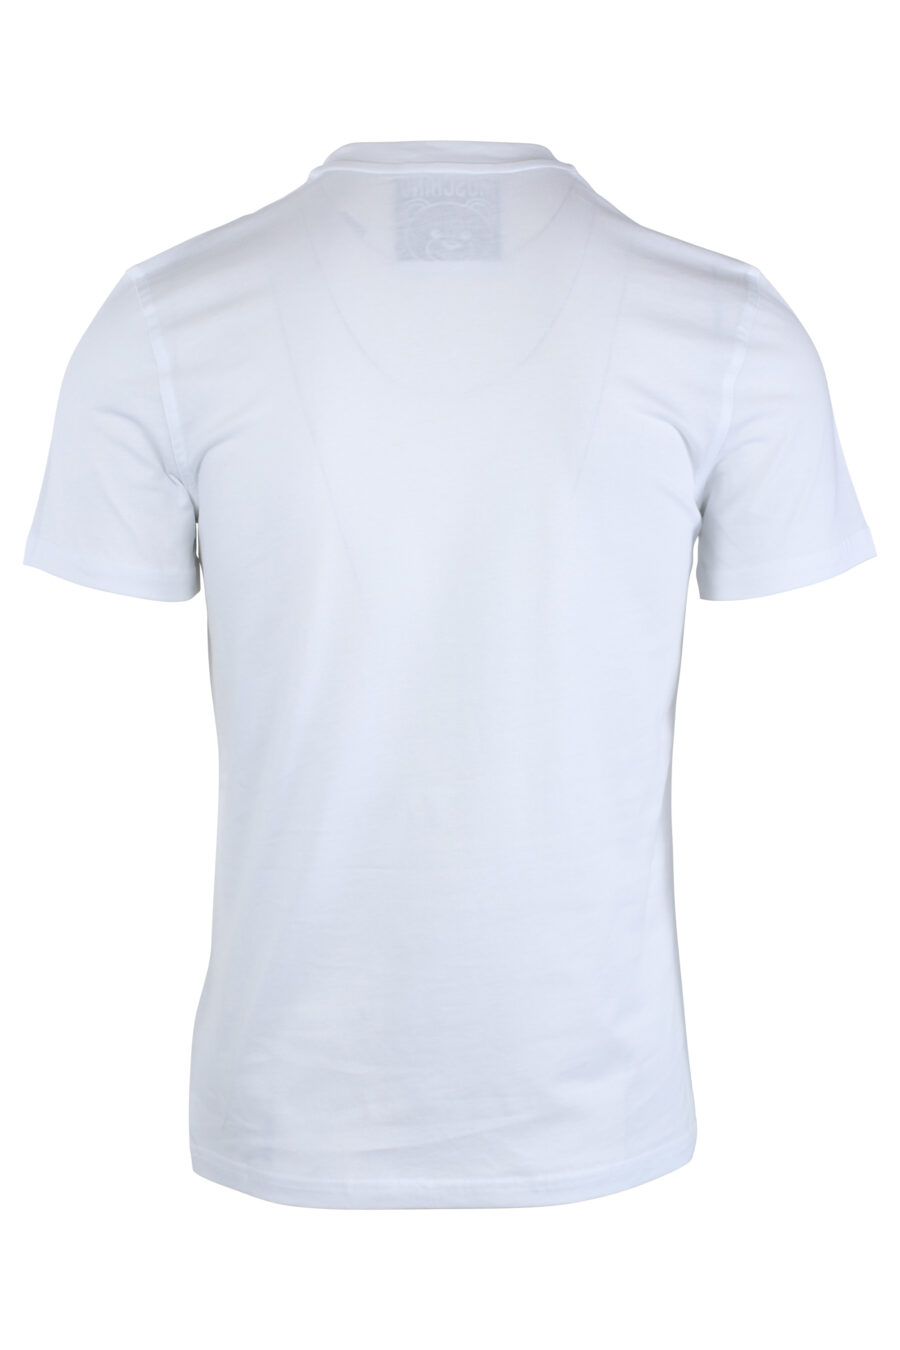 T-shirt blanc avec ours monochrome minilogue - IMG 1650